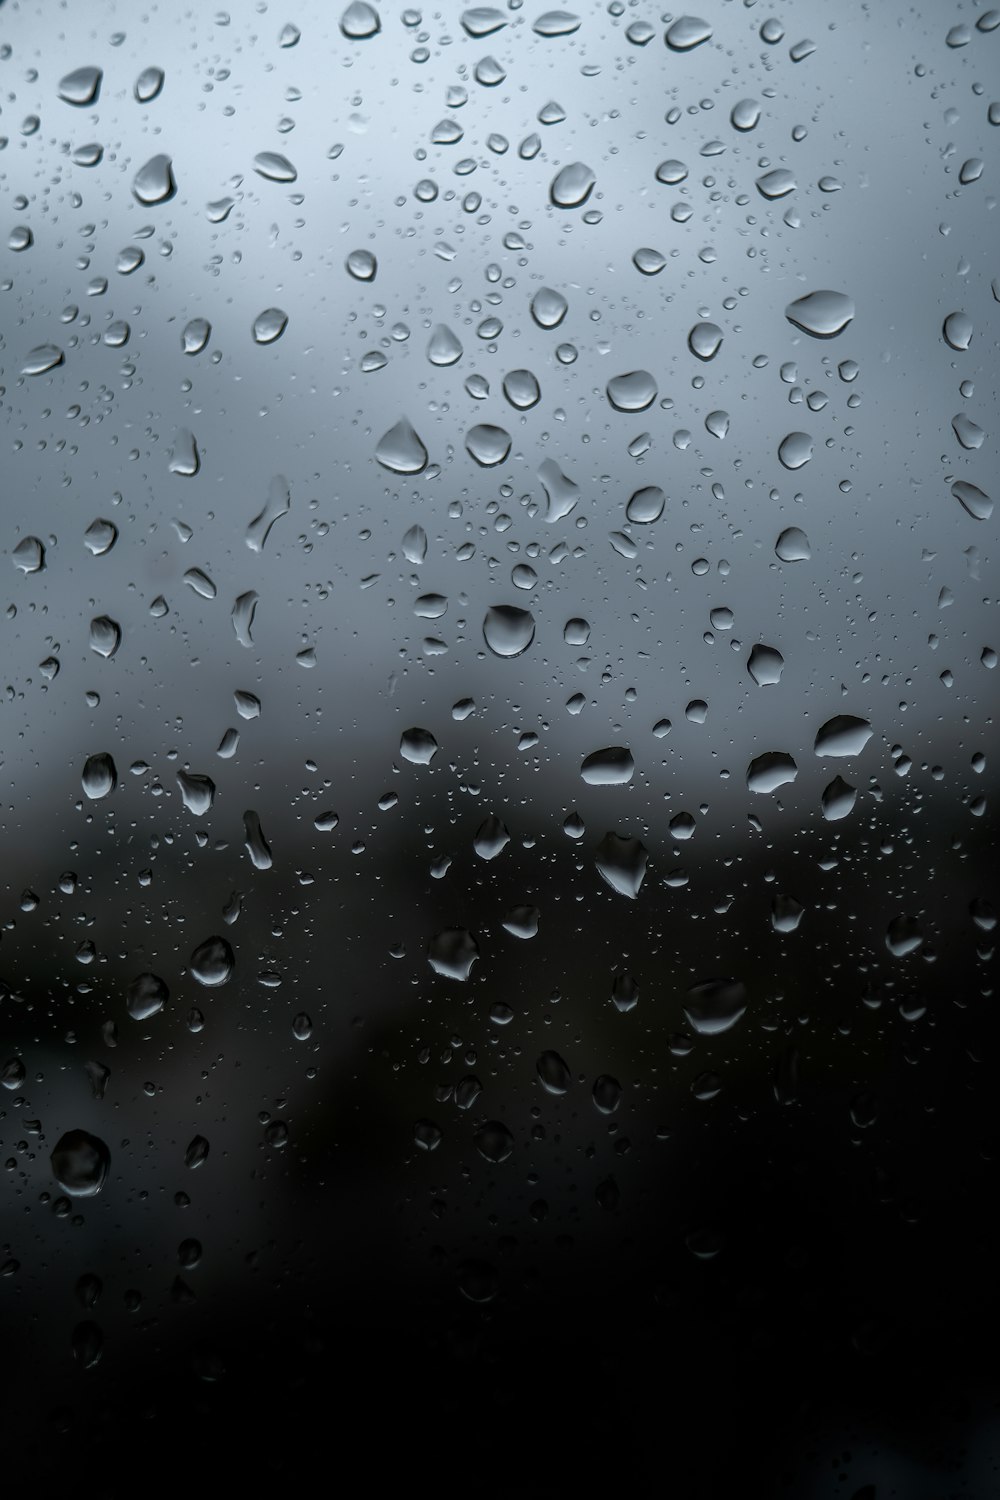 water droplets on window